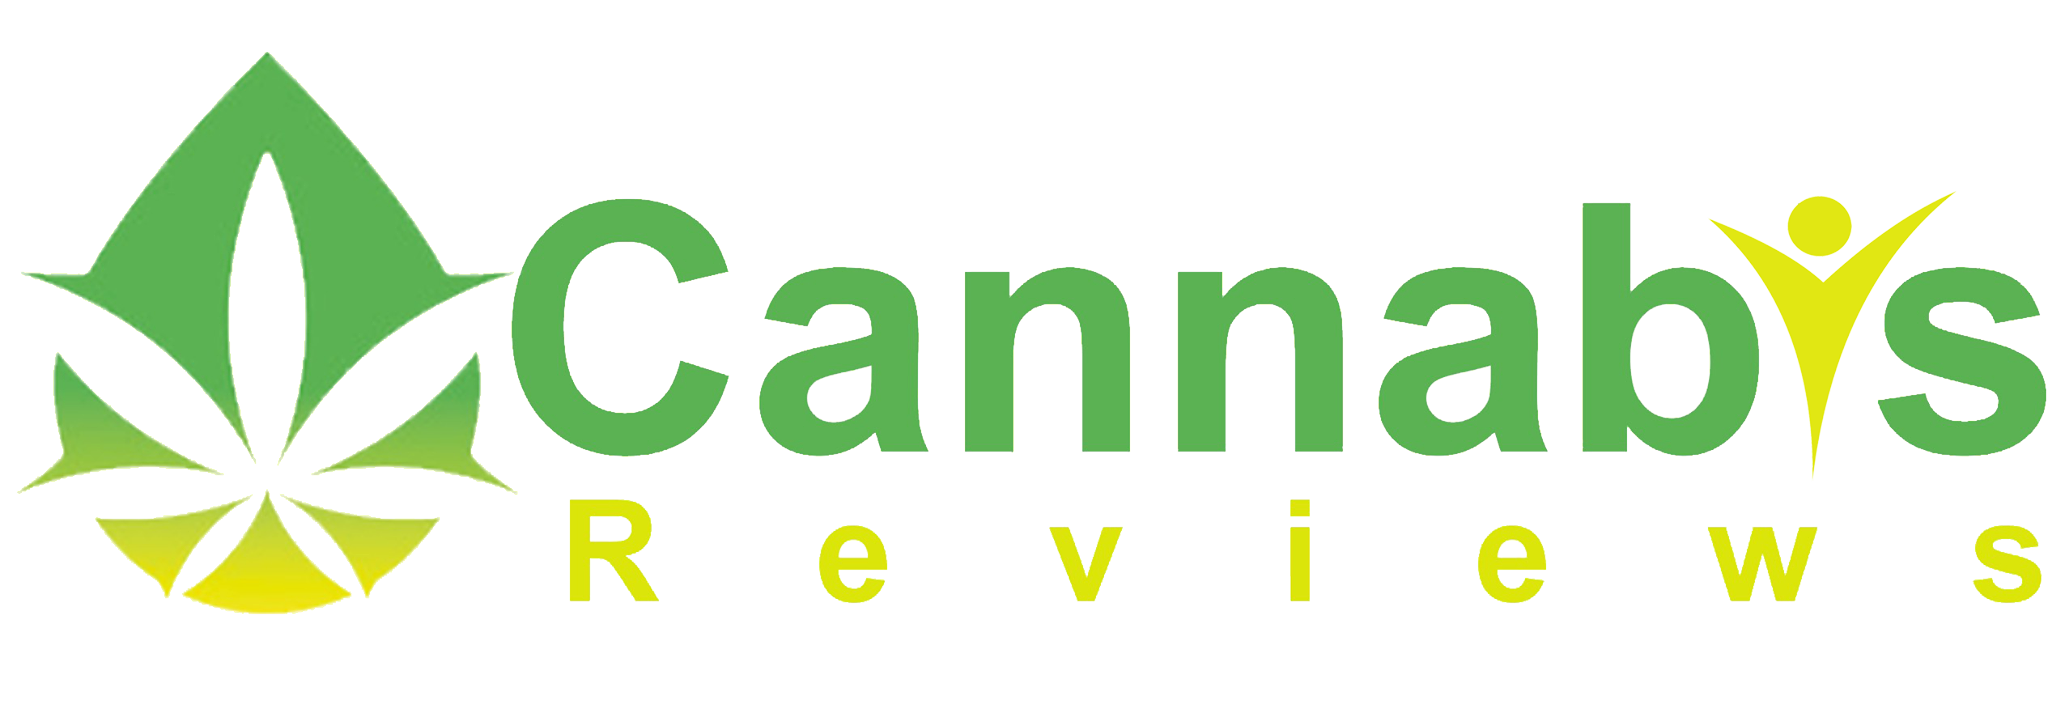 Cannabis Reviews